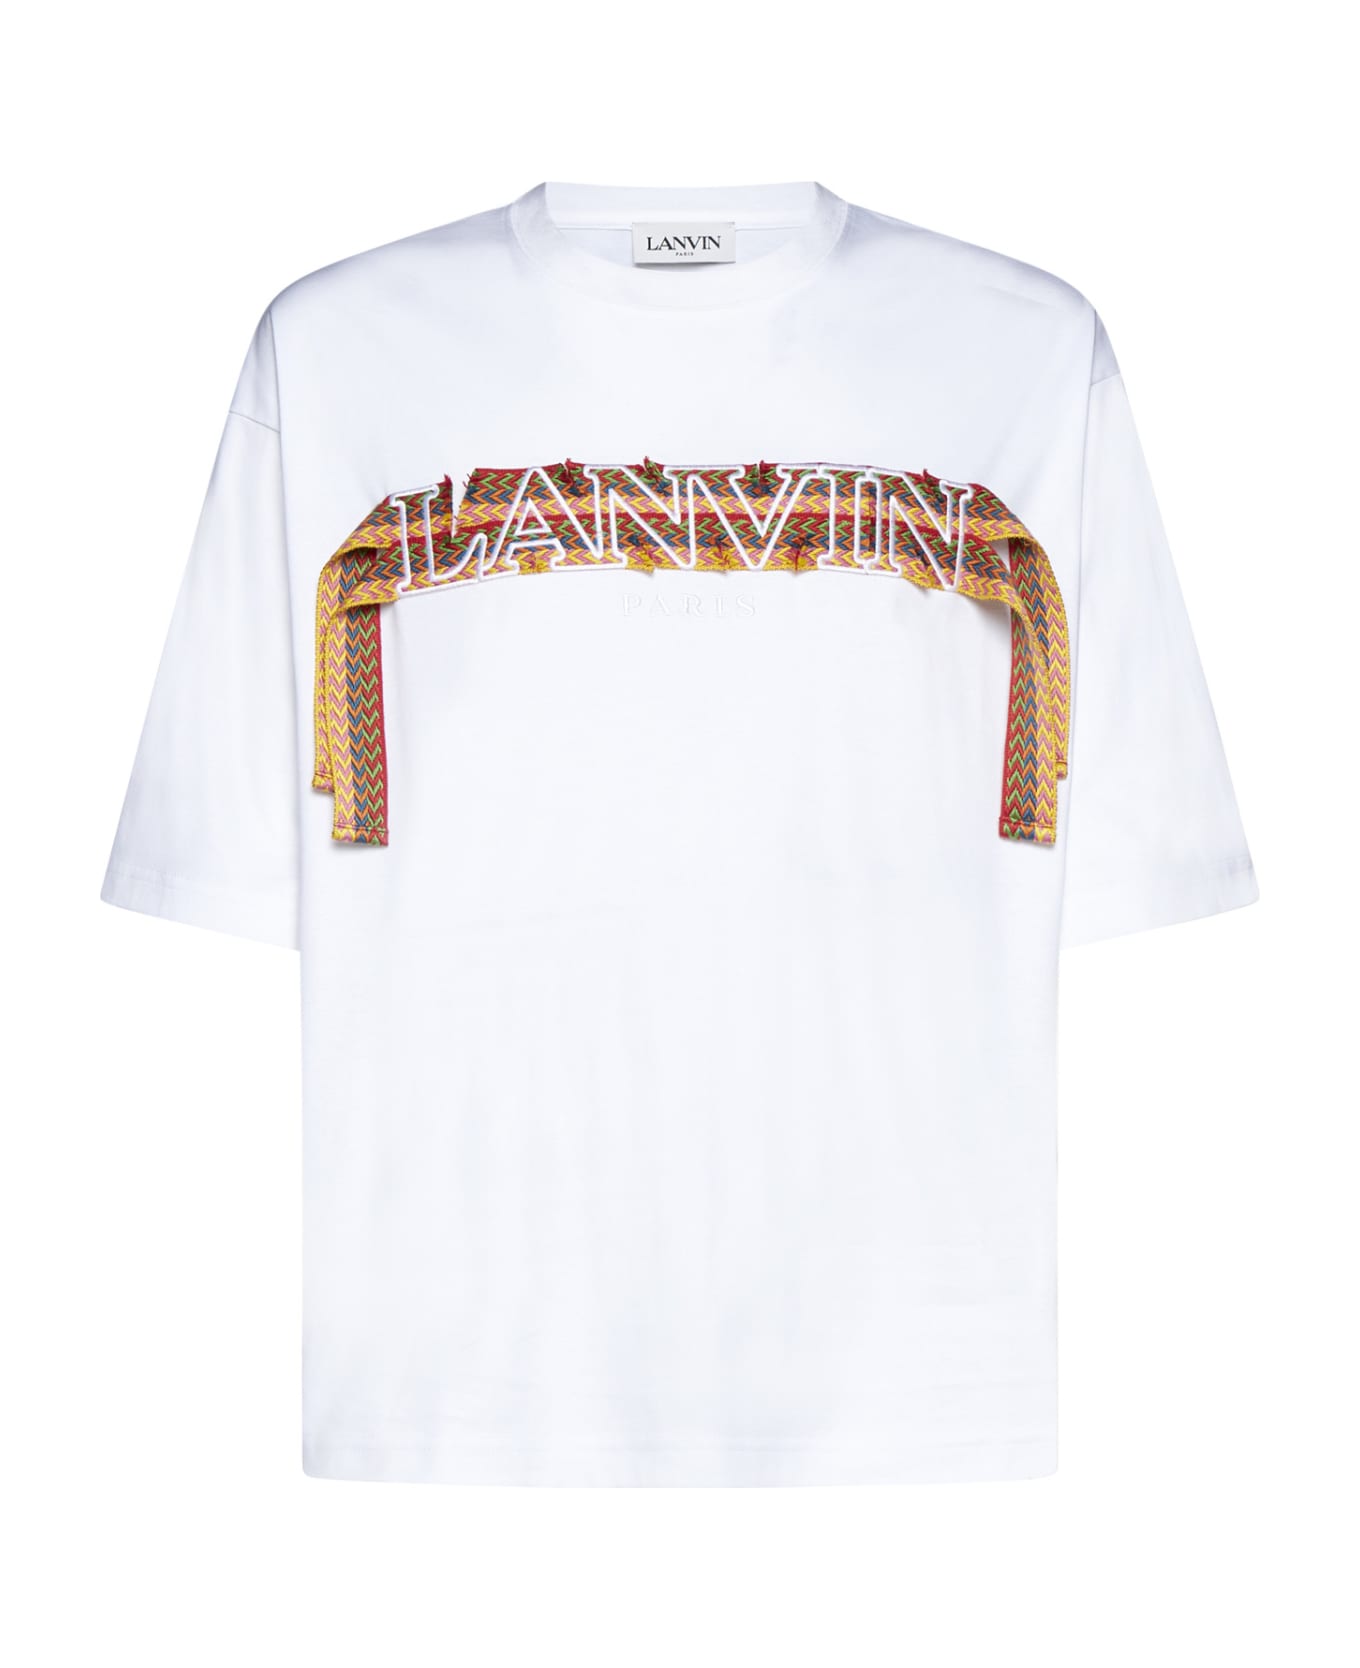 Lanvin T-Shirt - Optic white